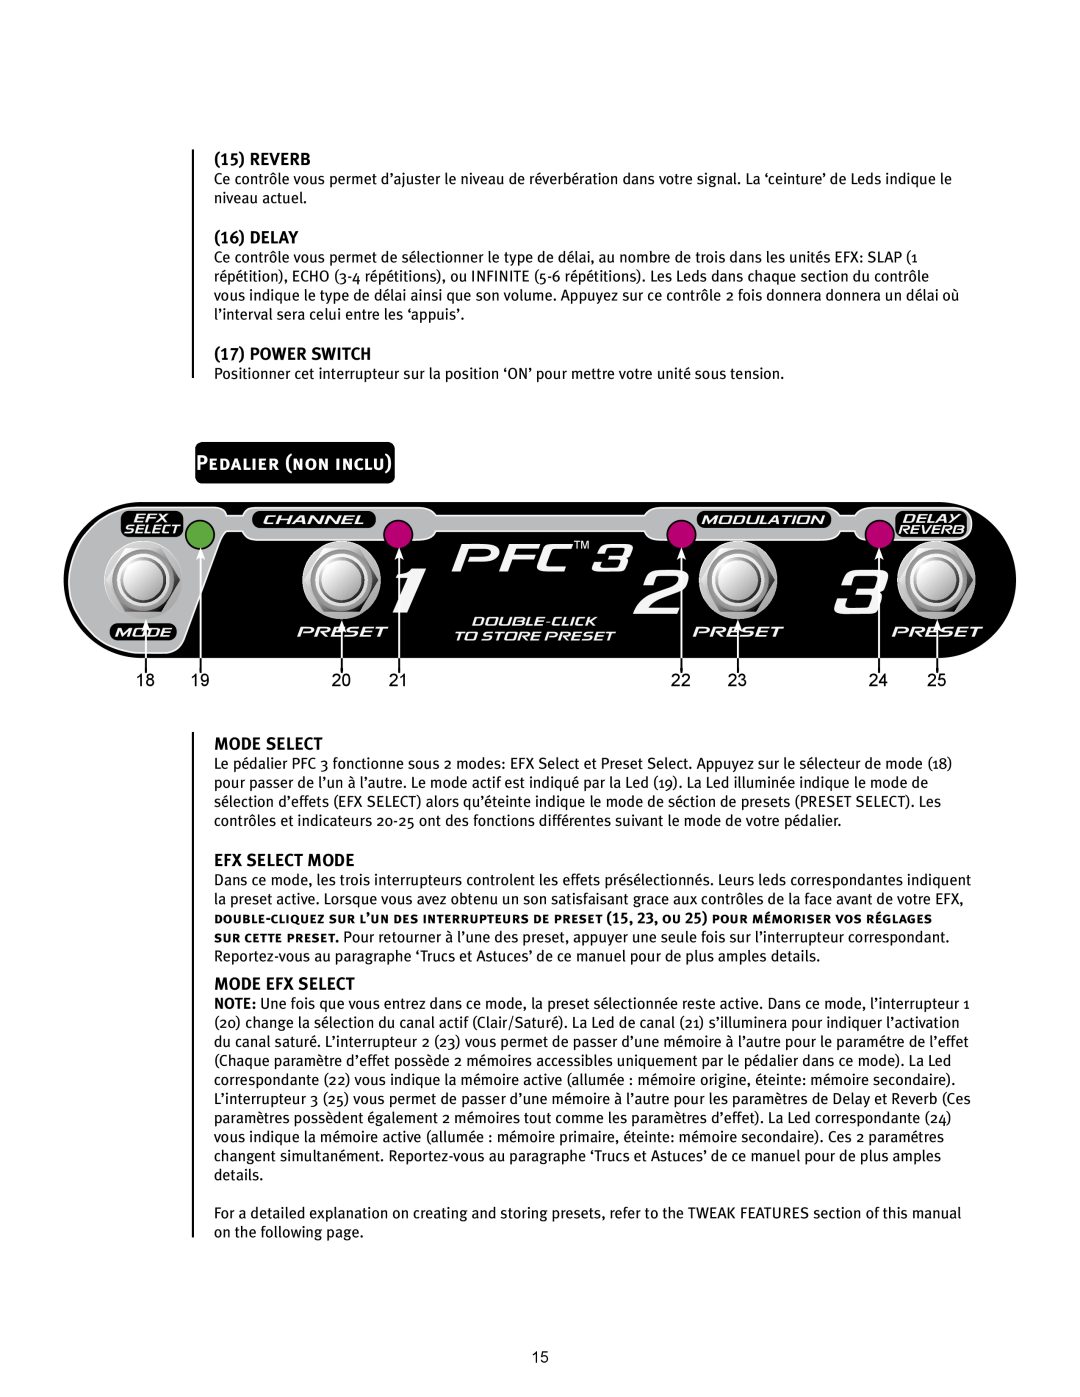 Peavey 110 EFX Pedalier non inclu, PFCTM3, Reverb, Delay, Power Switch, Mode Select, Efx Select Mode, Mode Efx Select 